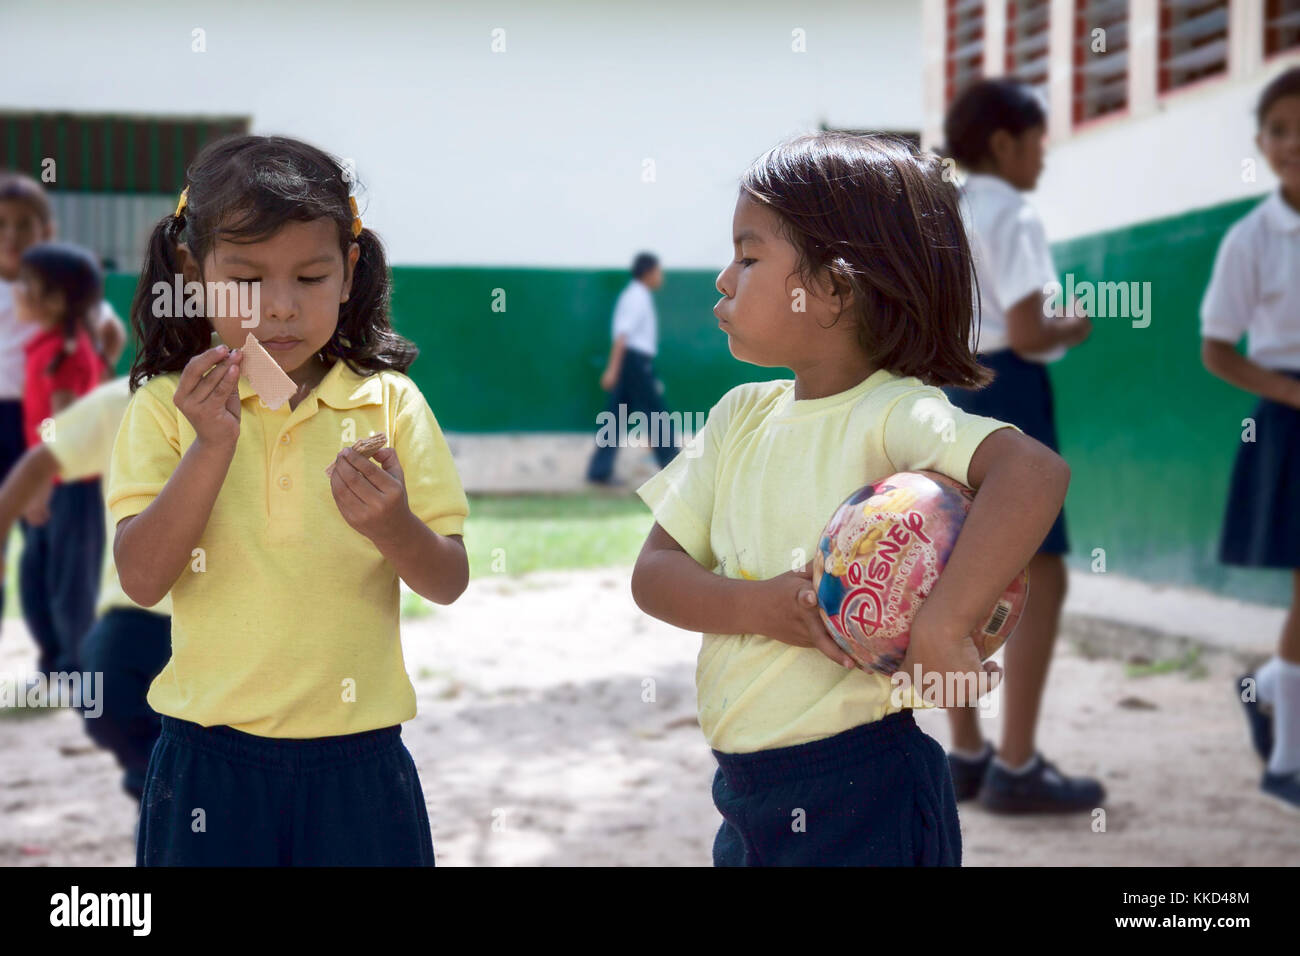 Canaima, Venezuela, 11. November 2010: pemon Mädchen mit einem Ball auf Mädchen mit Wafer an shchool Yard Stockfoto